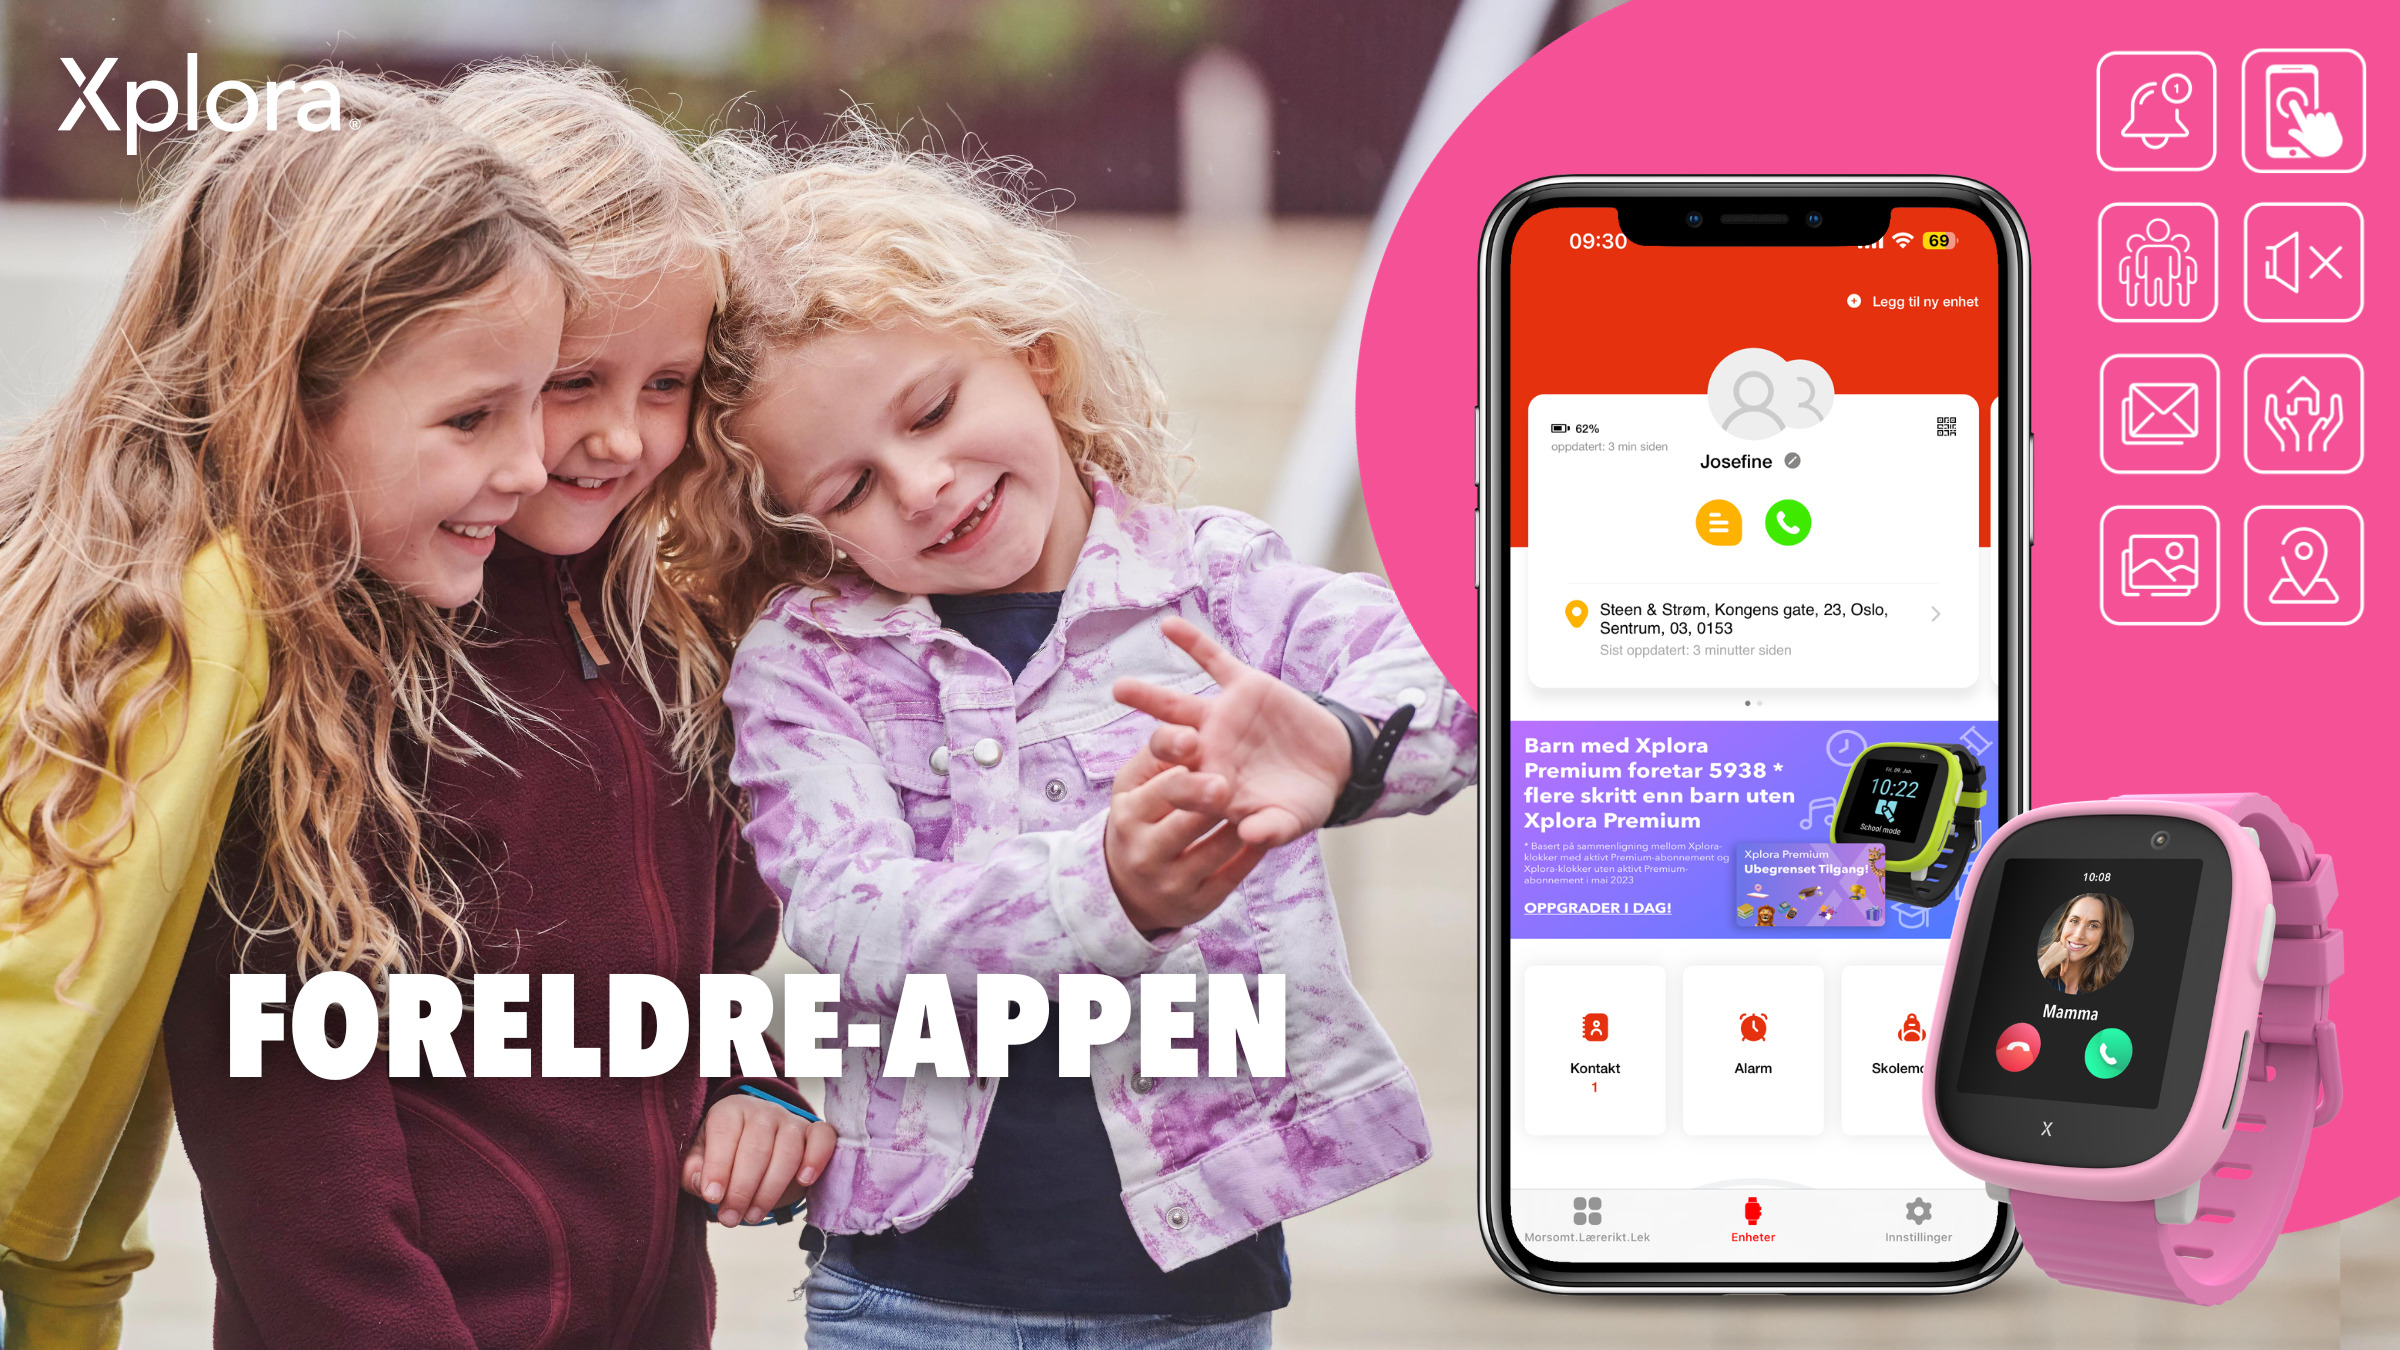 Få full oversikt med Xploras smarte foreldre-app!